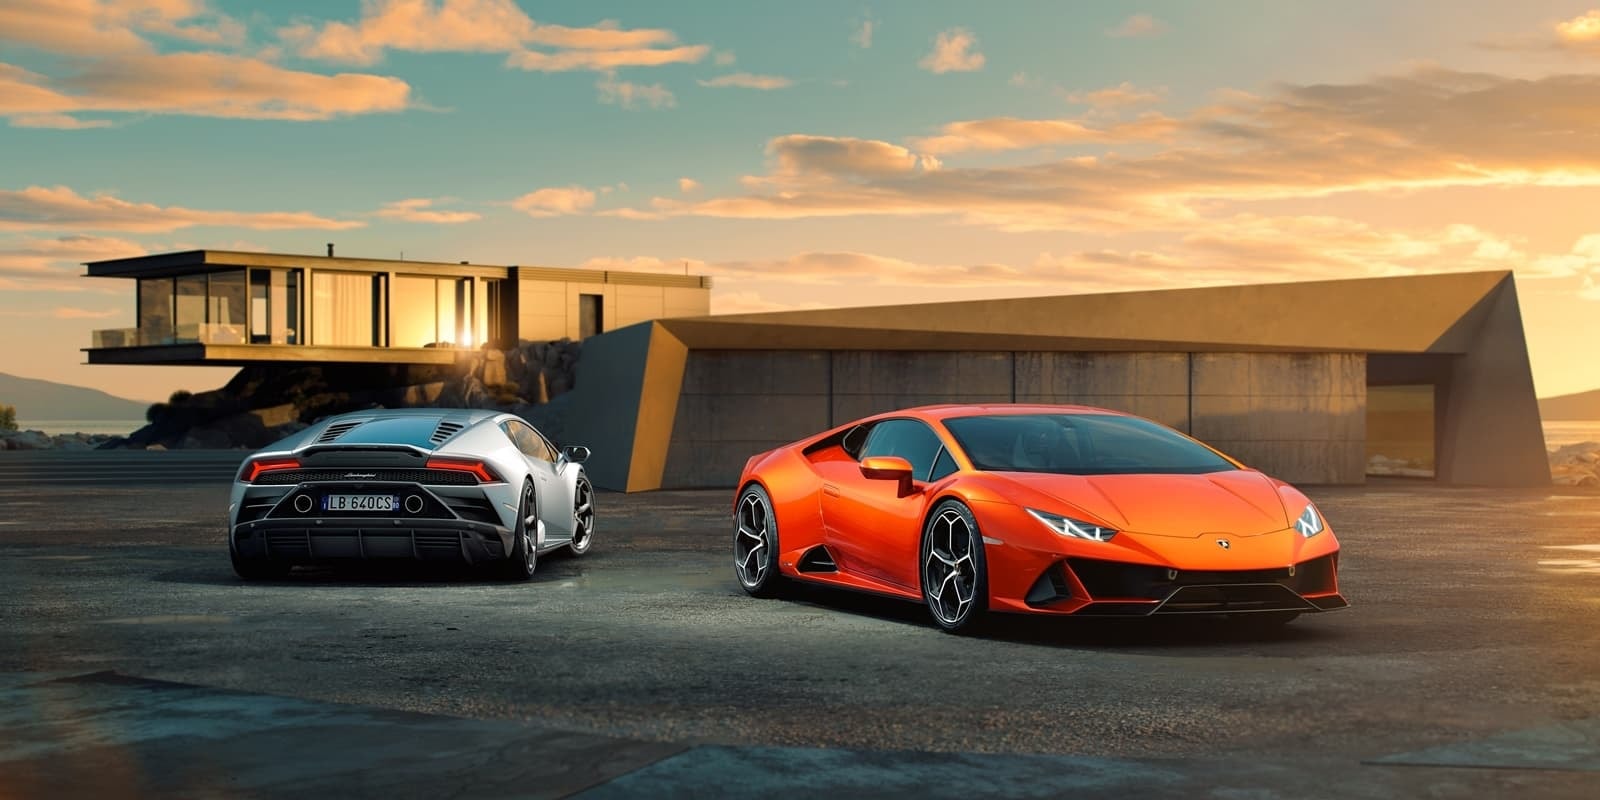 Dos Lamborghini Huracán Evo destacan ante una residencia moderna.